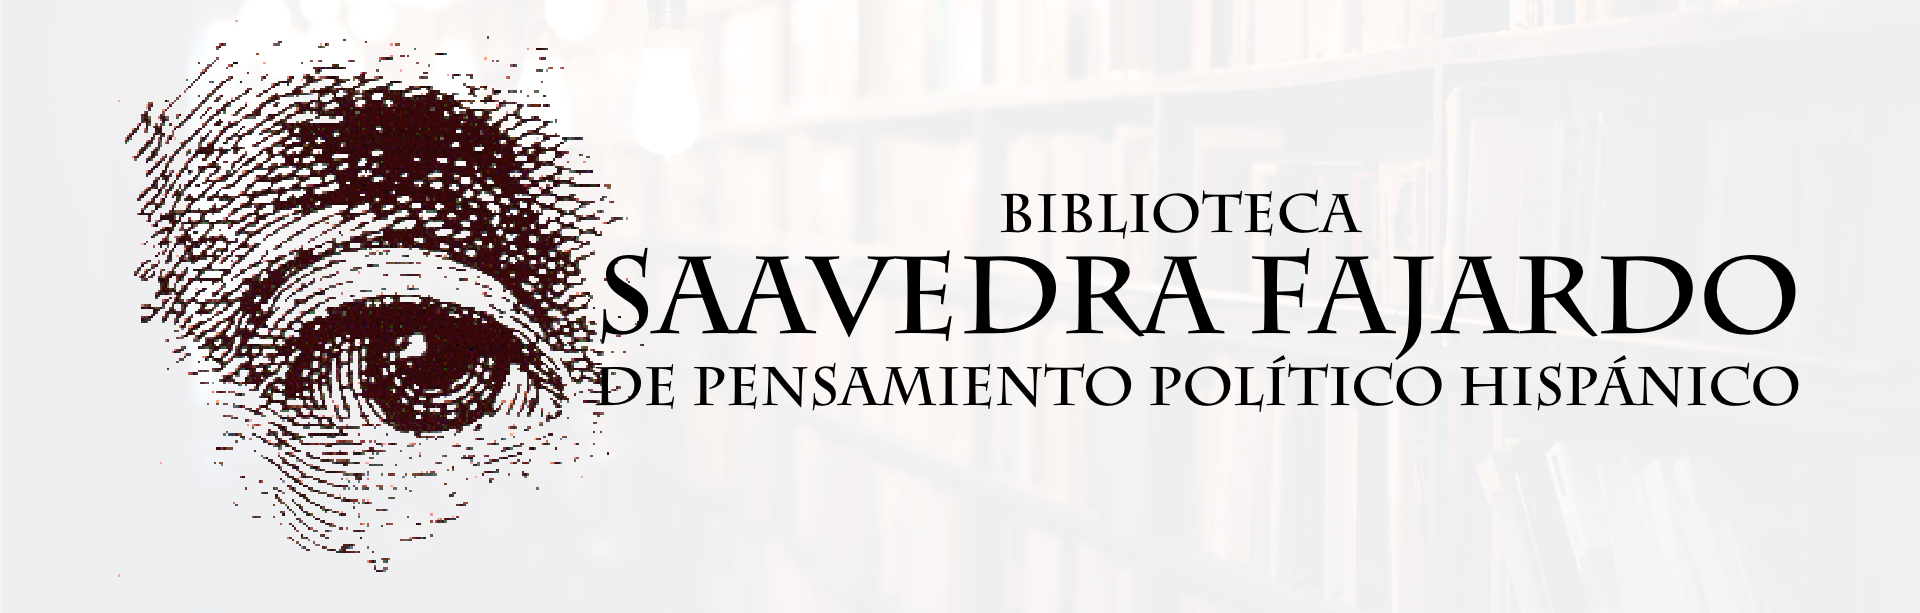 Descubre la Biblioteca Saavedra Fajardo